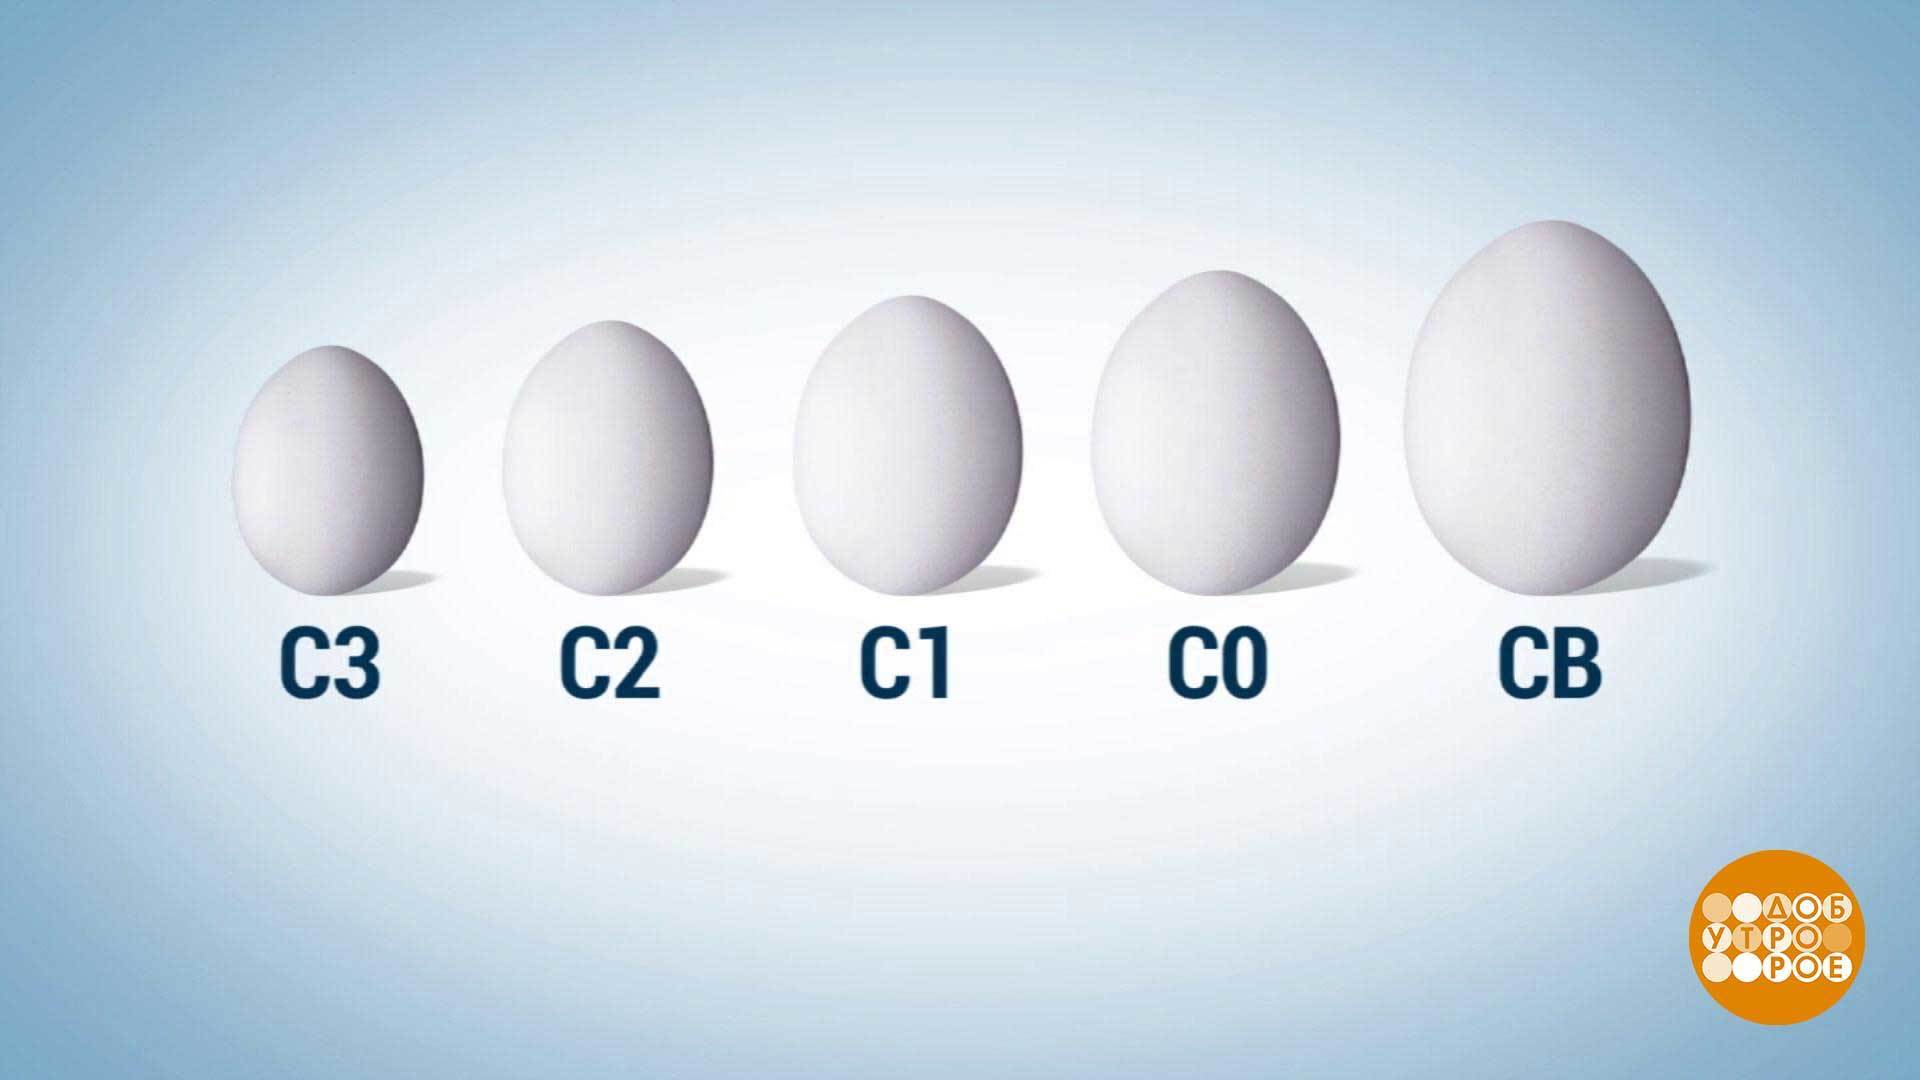 Яйца с2 лучше с0. Маркировка яиц. Маркирование яиц. Категории яиц куриных. Обозначение яиц.